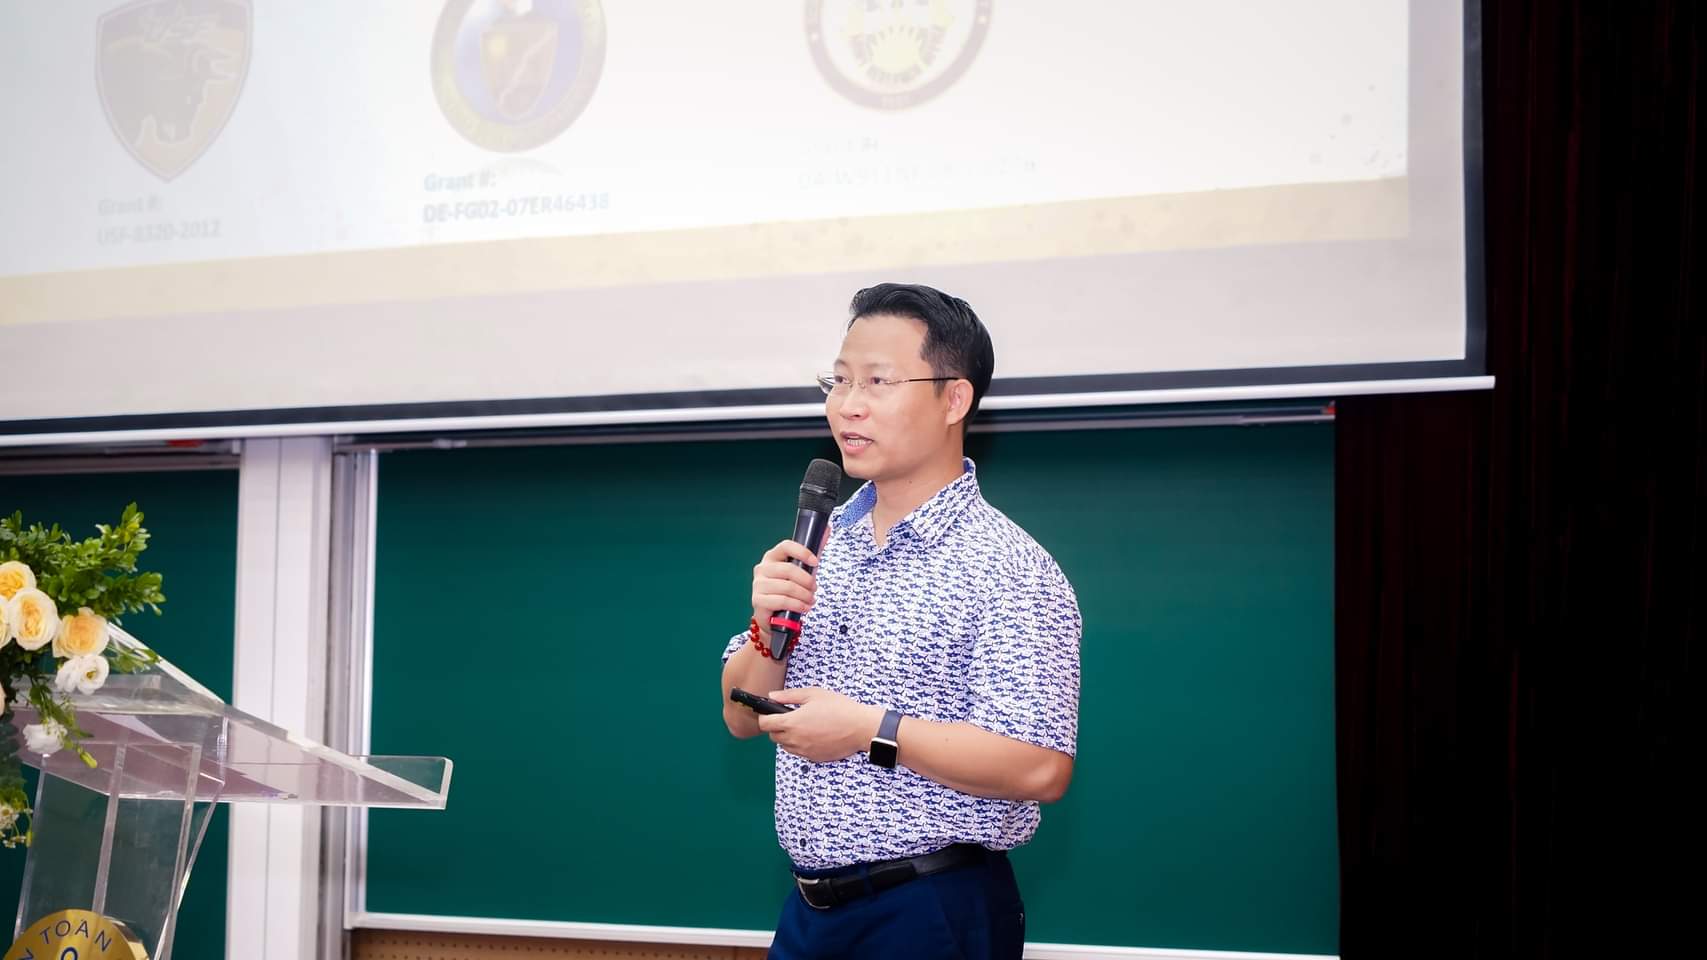 Giáo sư Phan Mạnh Hưởng là chuyên gia trong phát triển các vật liệu nhiệt từ và vật liệu kháng từ cho các công nghệ cảm biến thông minh và làm lạnh nhiệt từ. Nguồn: VINIF